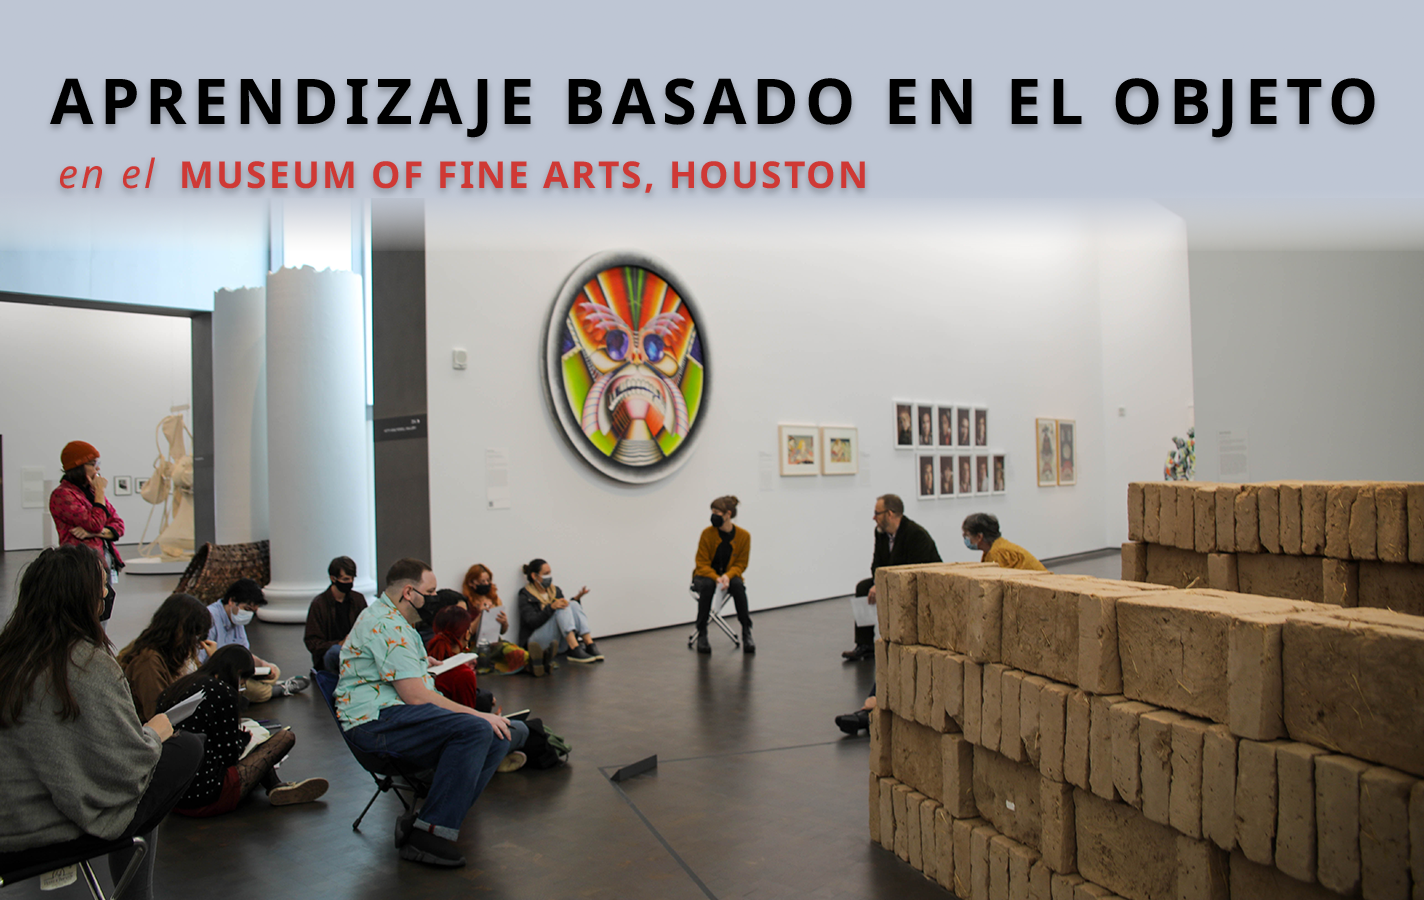 <p><strong>Aprendizaje Basado en el Objeto en el Museum of Fine Arts, Houston</strong></p>
